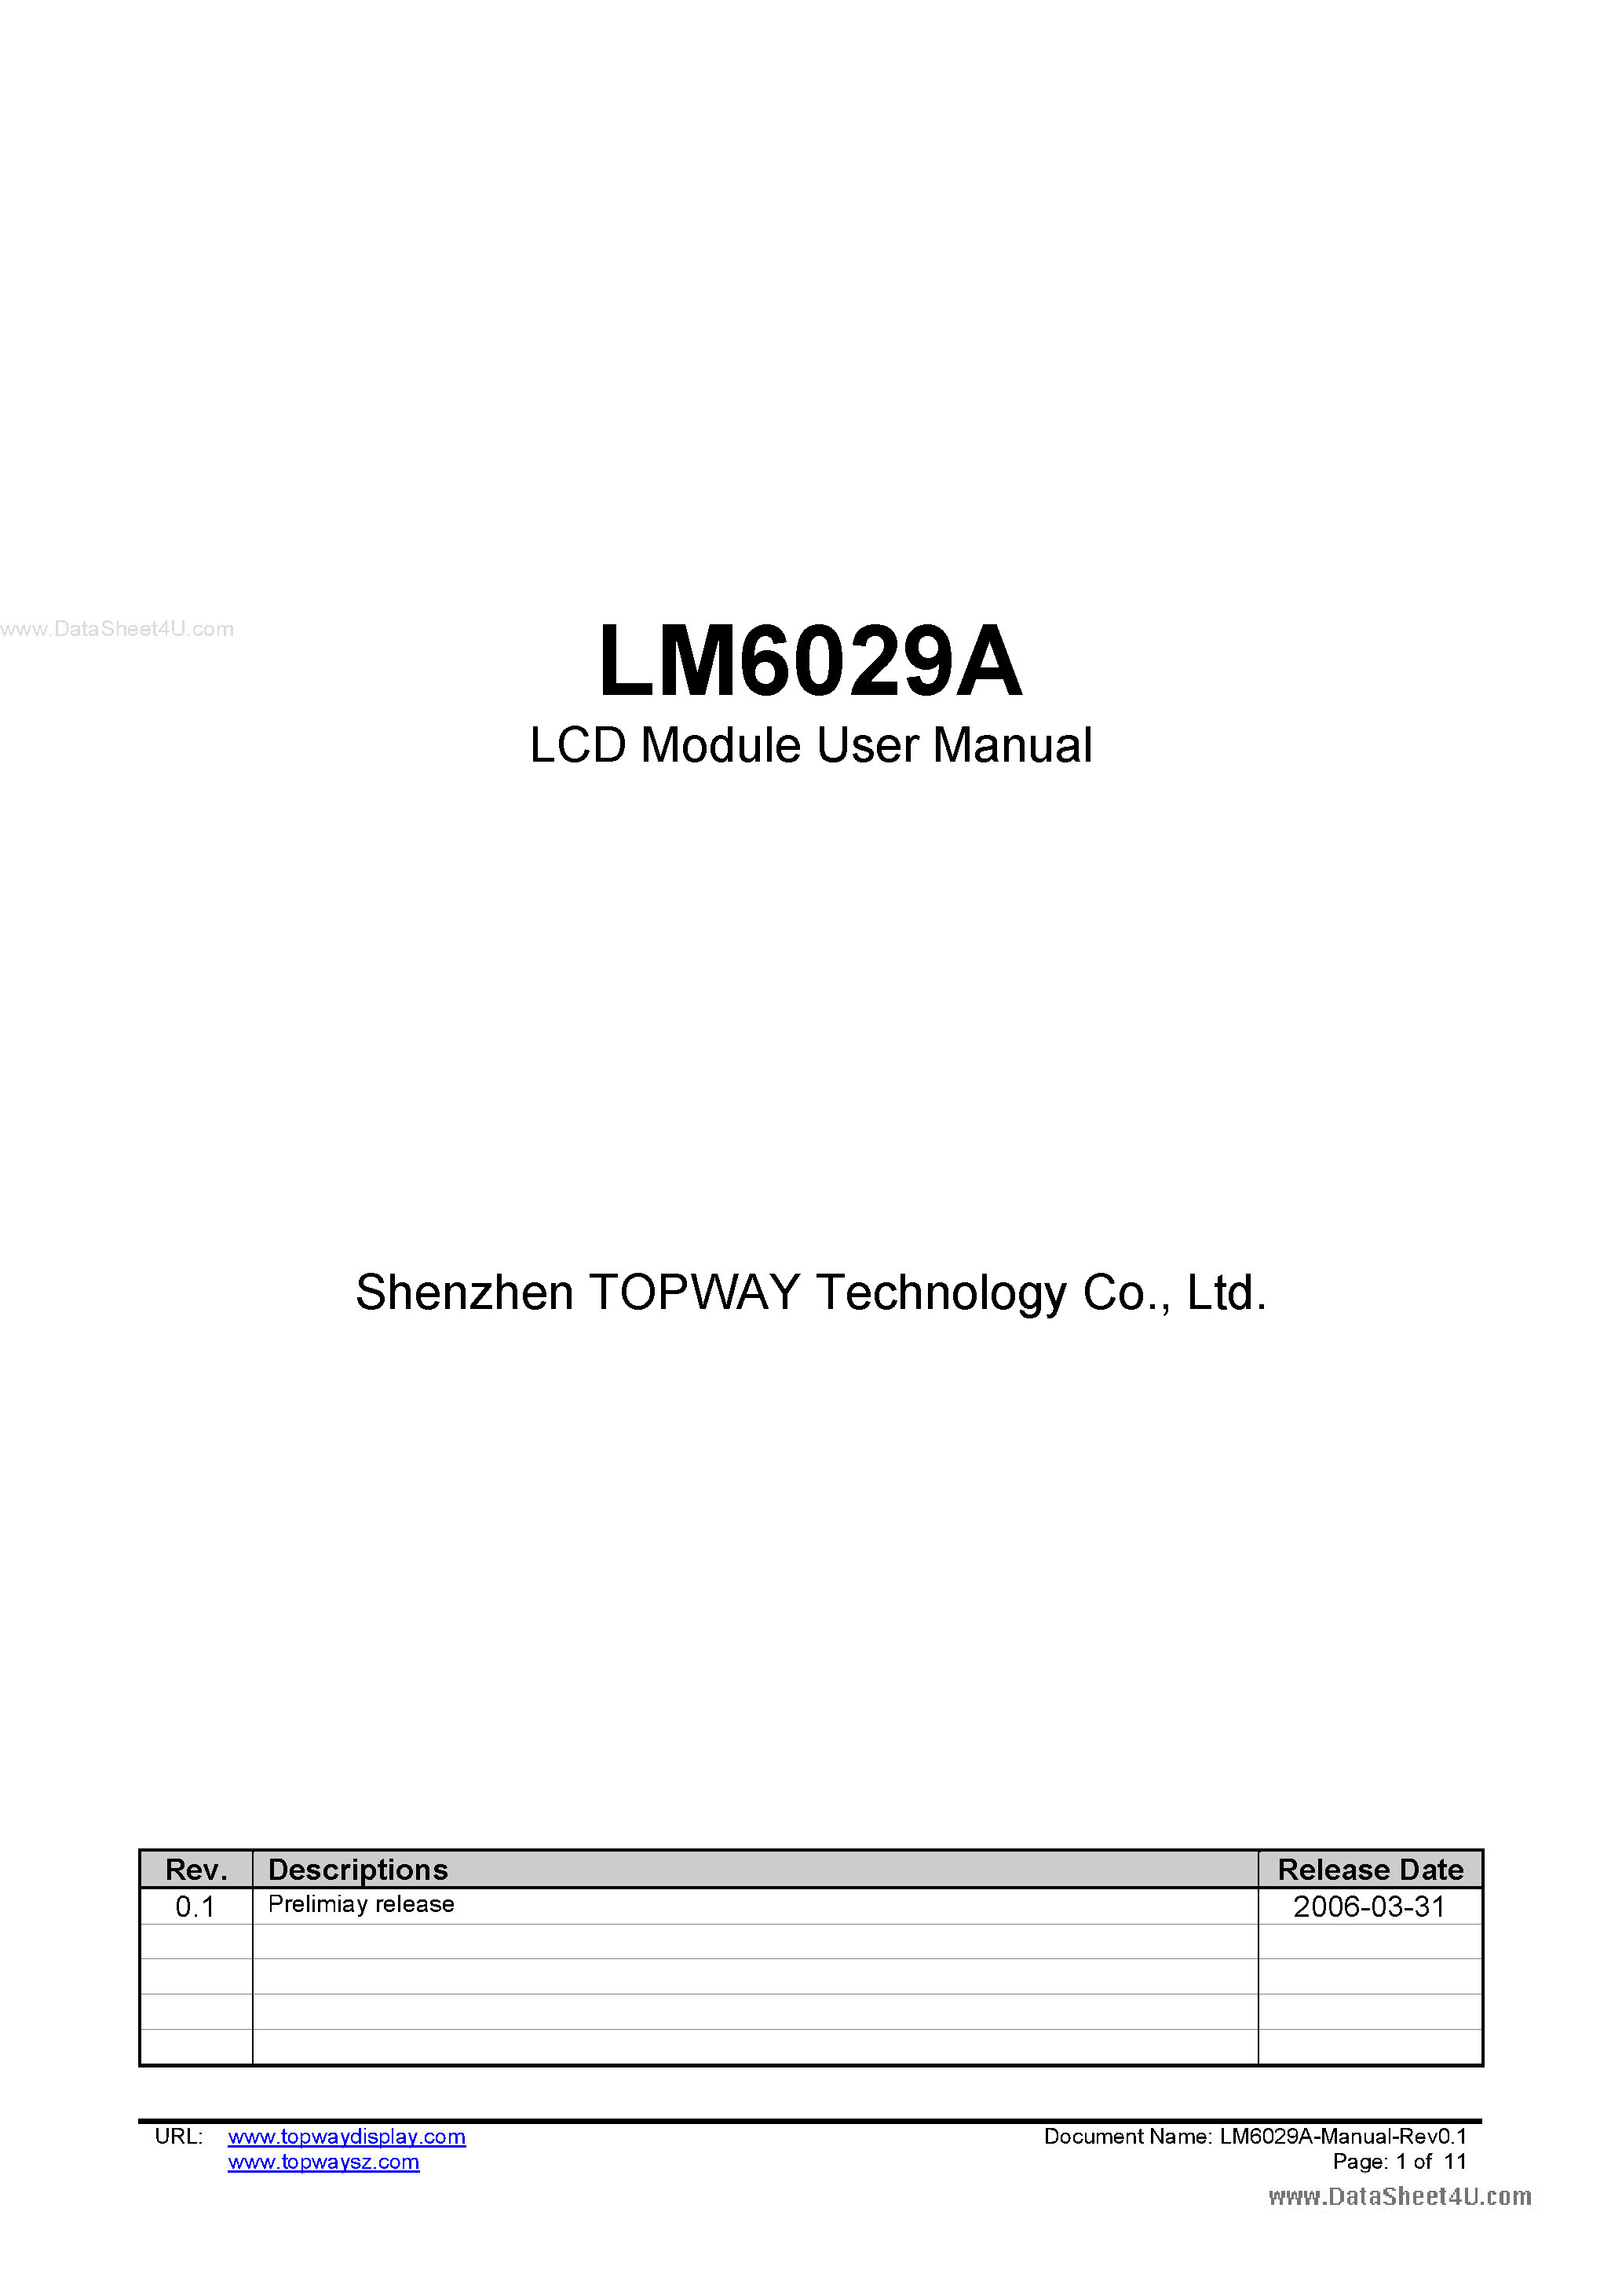 Даташит LM6029A - LCD Module страница 1